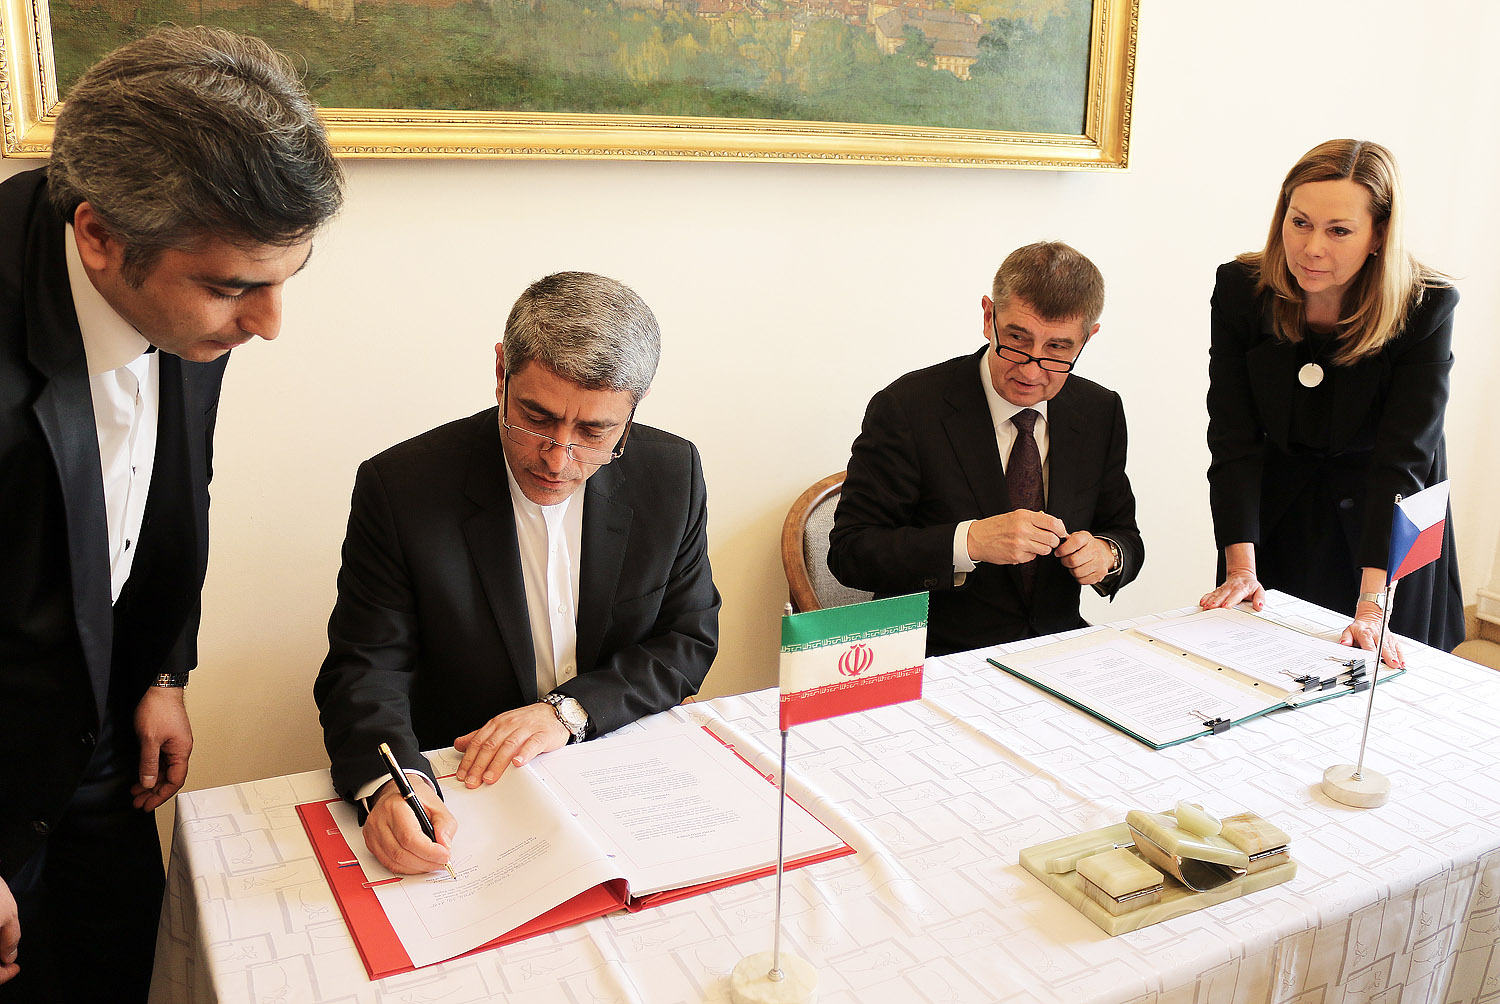 Podpis smlouvy o zamezení dvojímu zdanění s Íránskou islámskou republikou, 30.4.2015